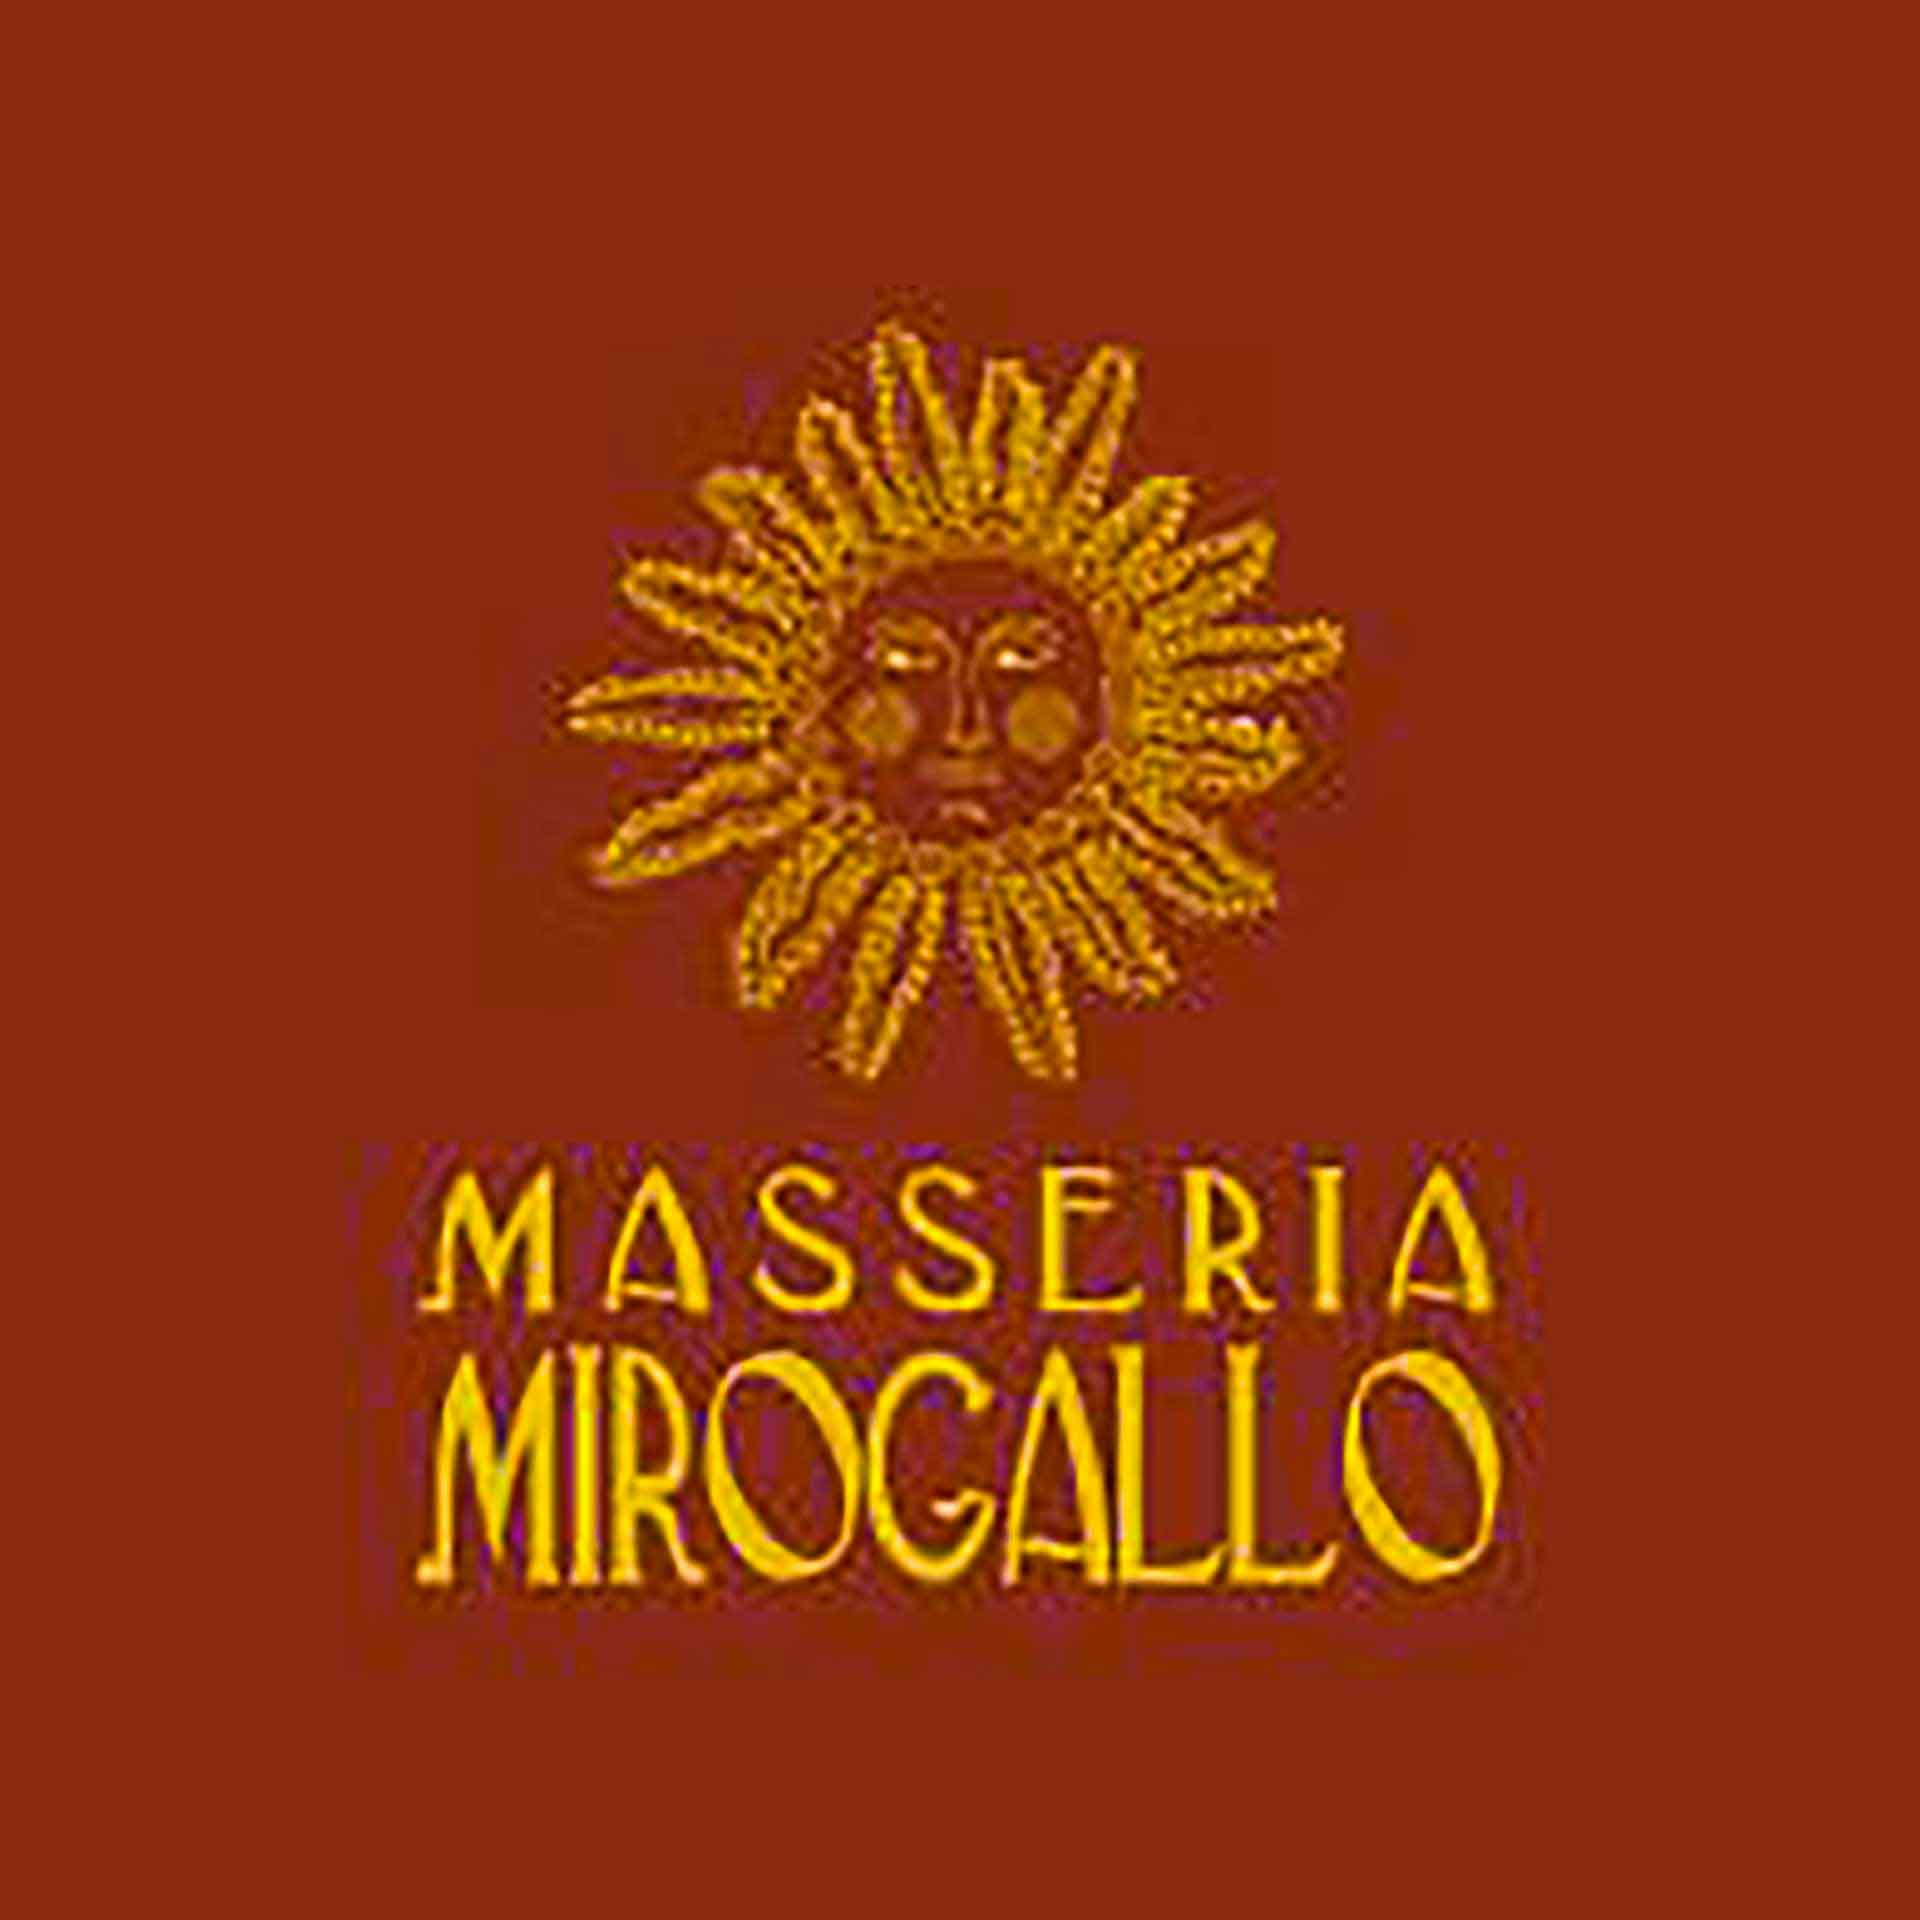 Masseria Mirogallo